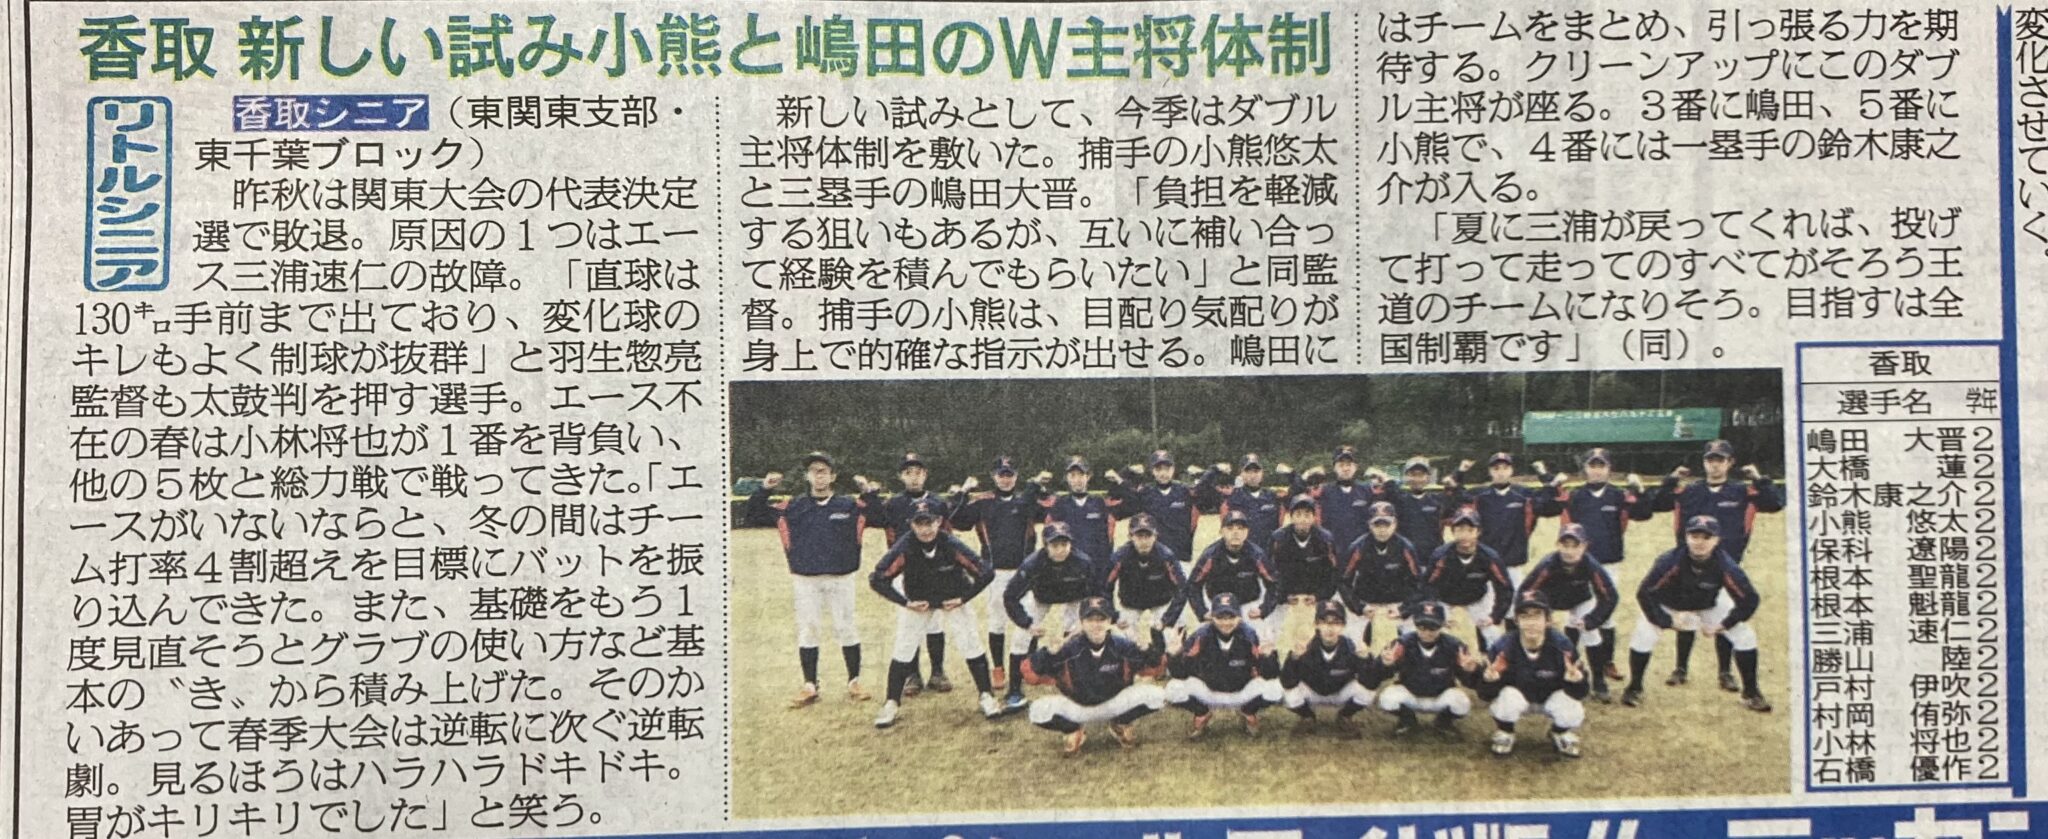 10 札幌 日刊 スポーツ 杯 2021 2022